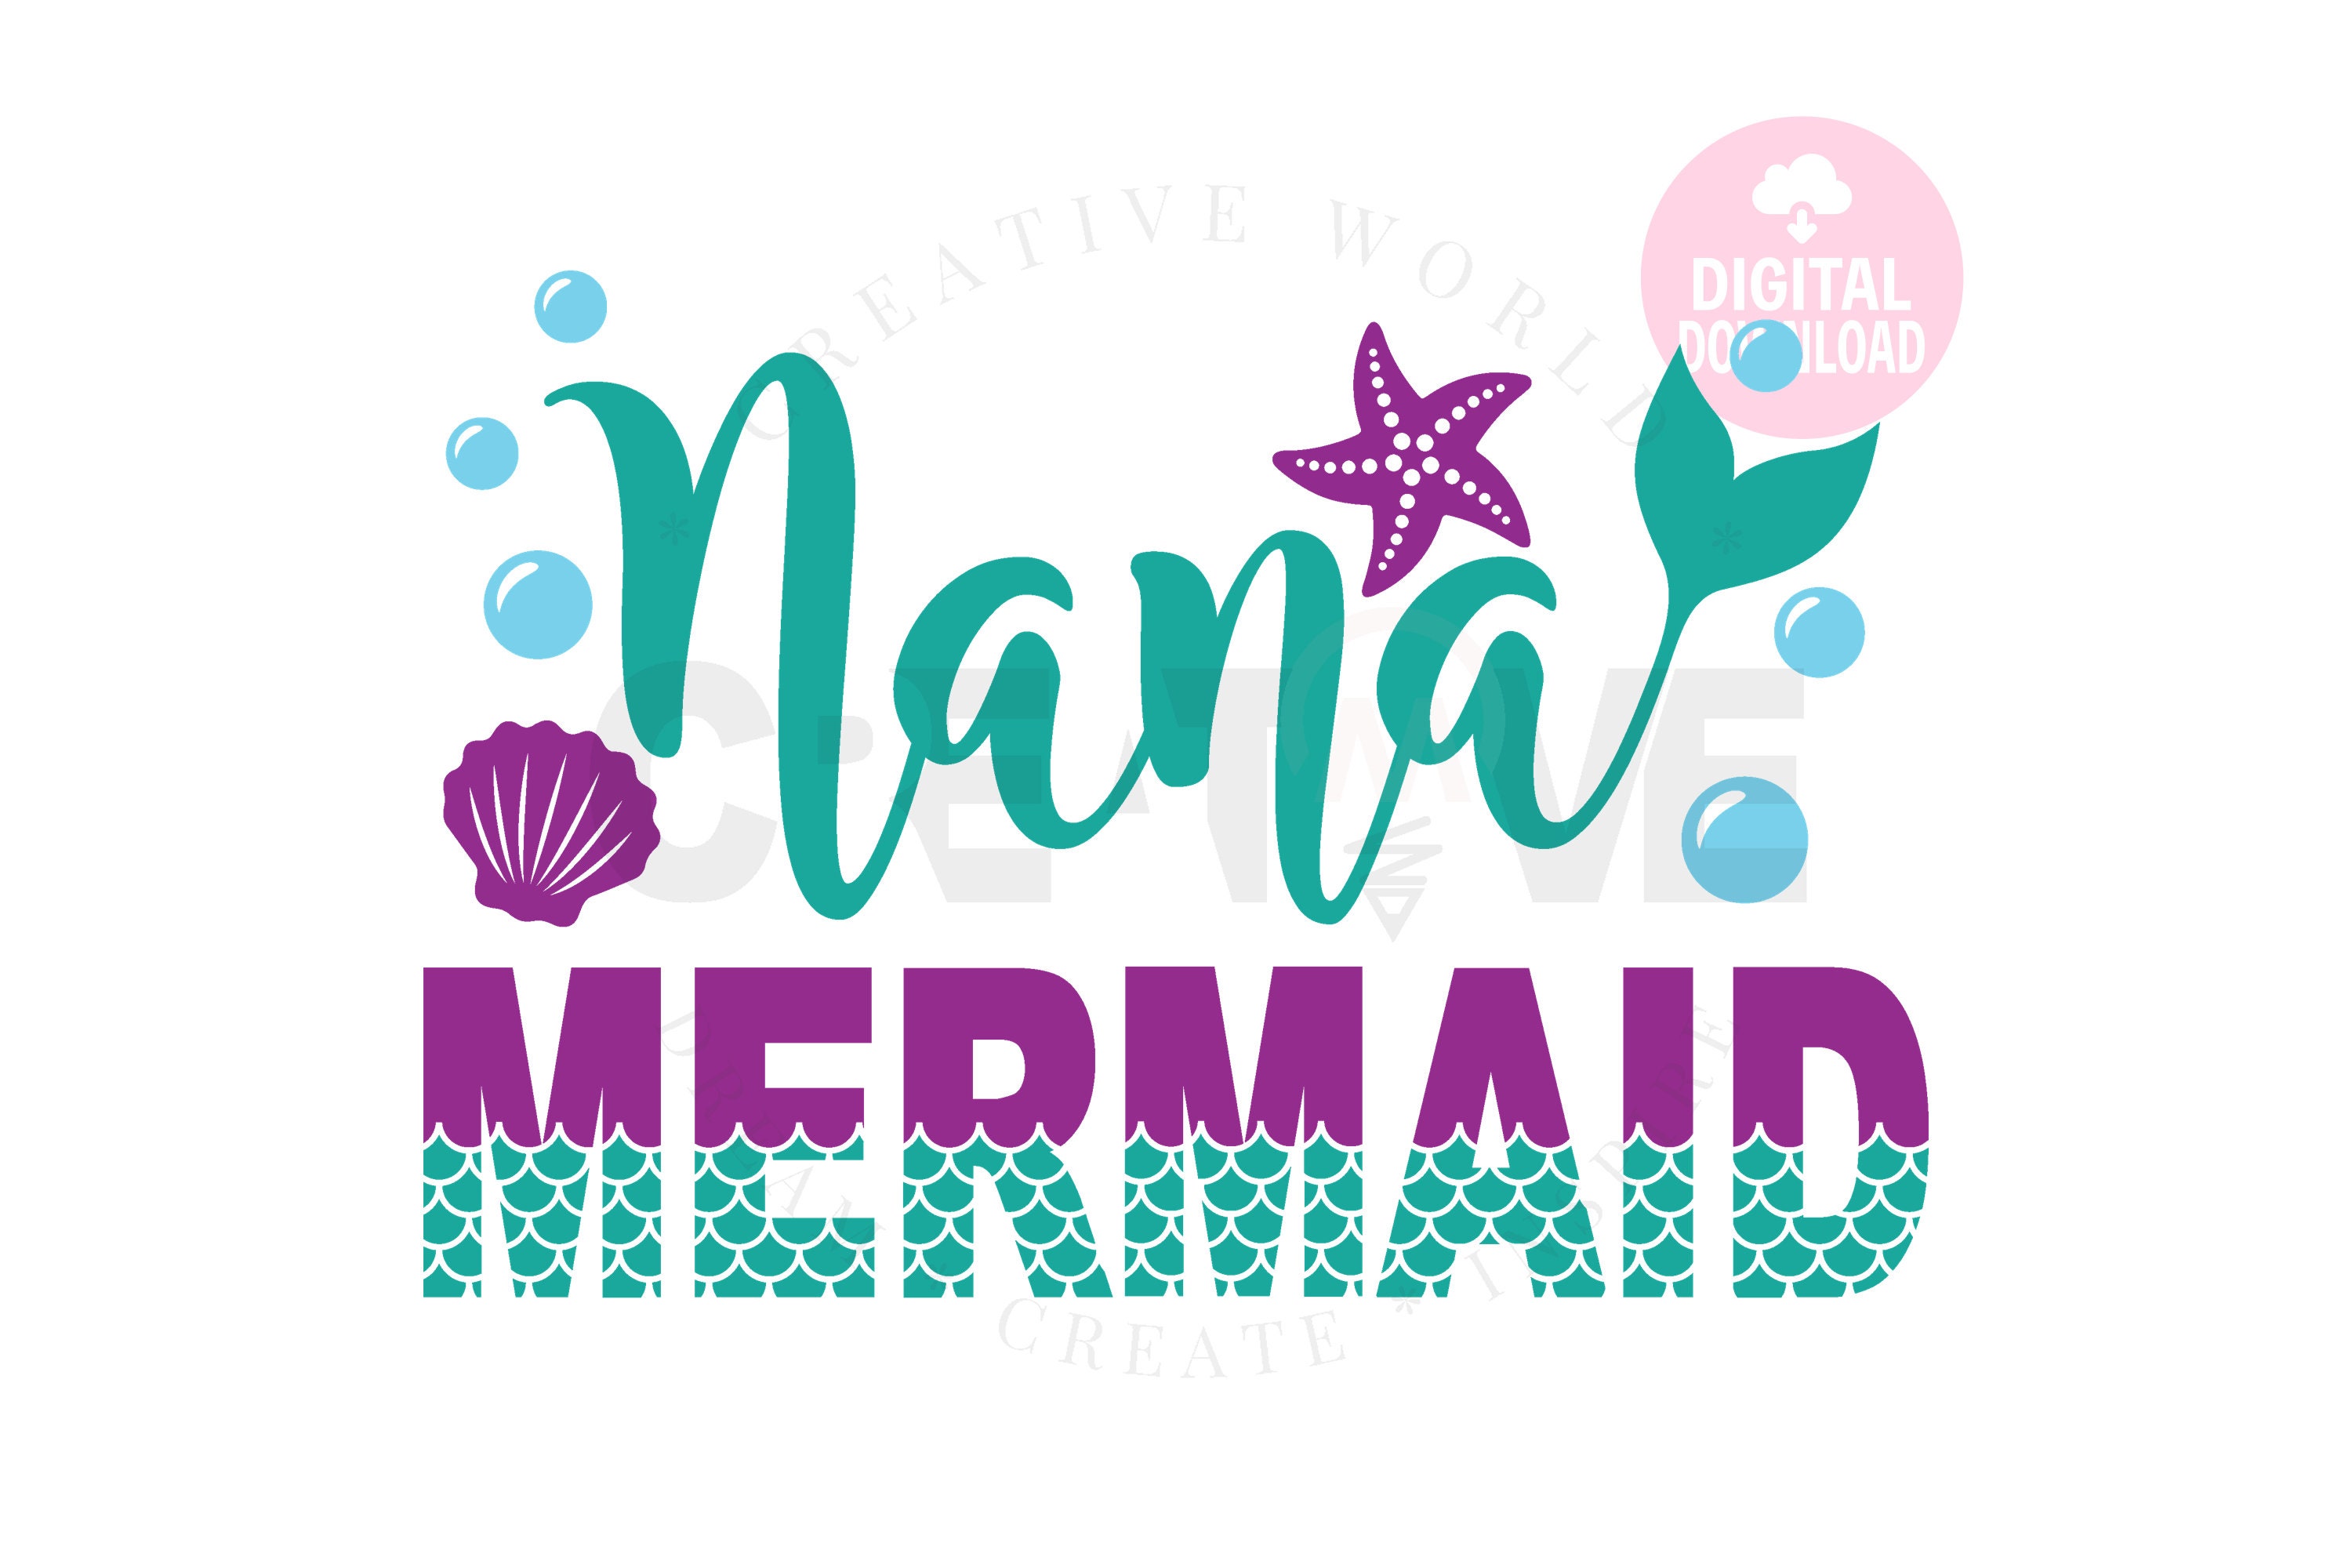 Download Big Bundle 15 Family Mermaid Birthday SVG Bundle Mermaid ...